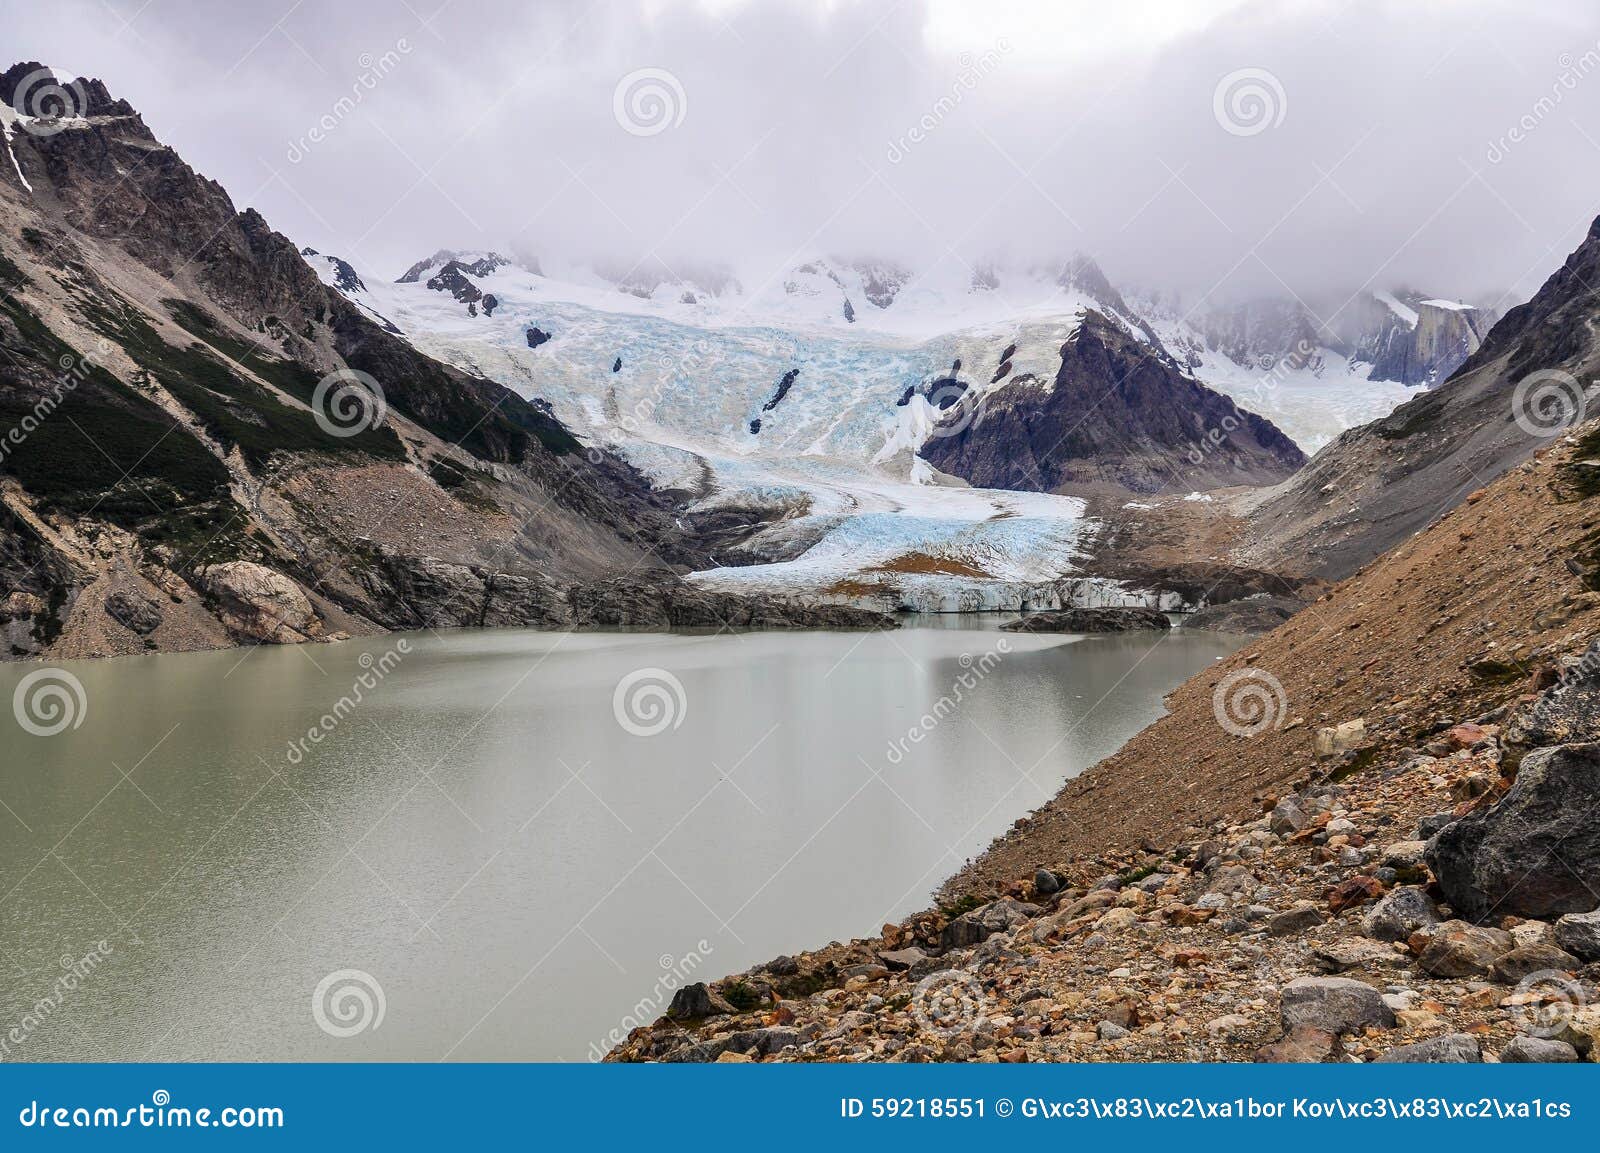 Glacier at Cerro Torre, El Chalten, Argentina Stock Image - Image of ...